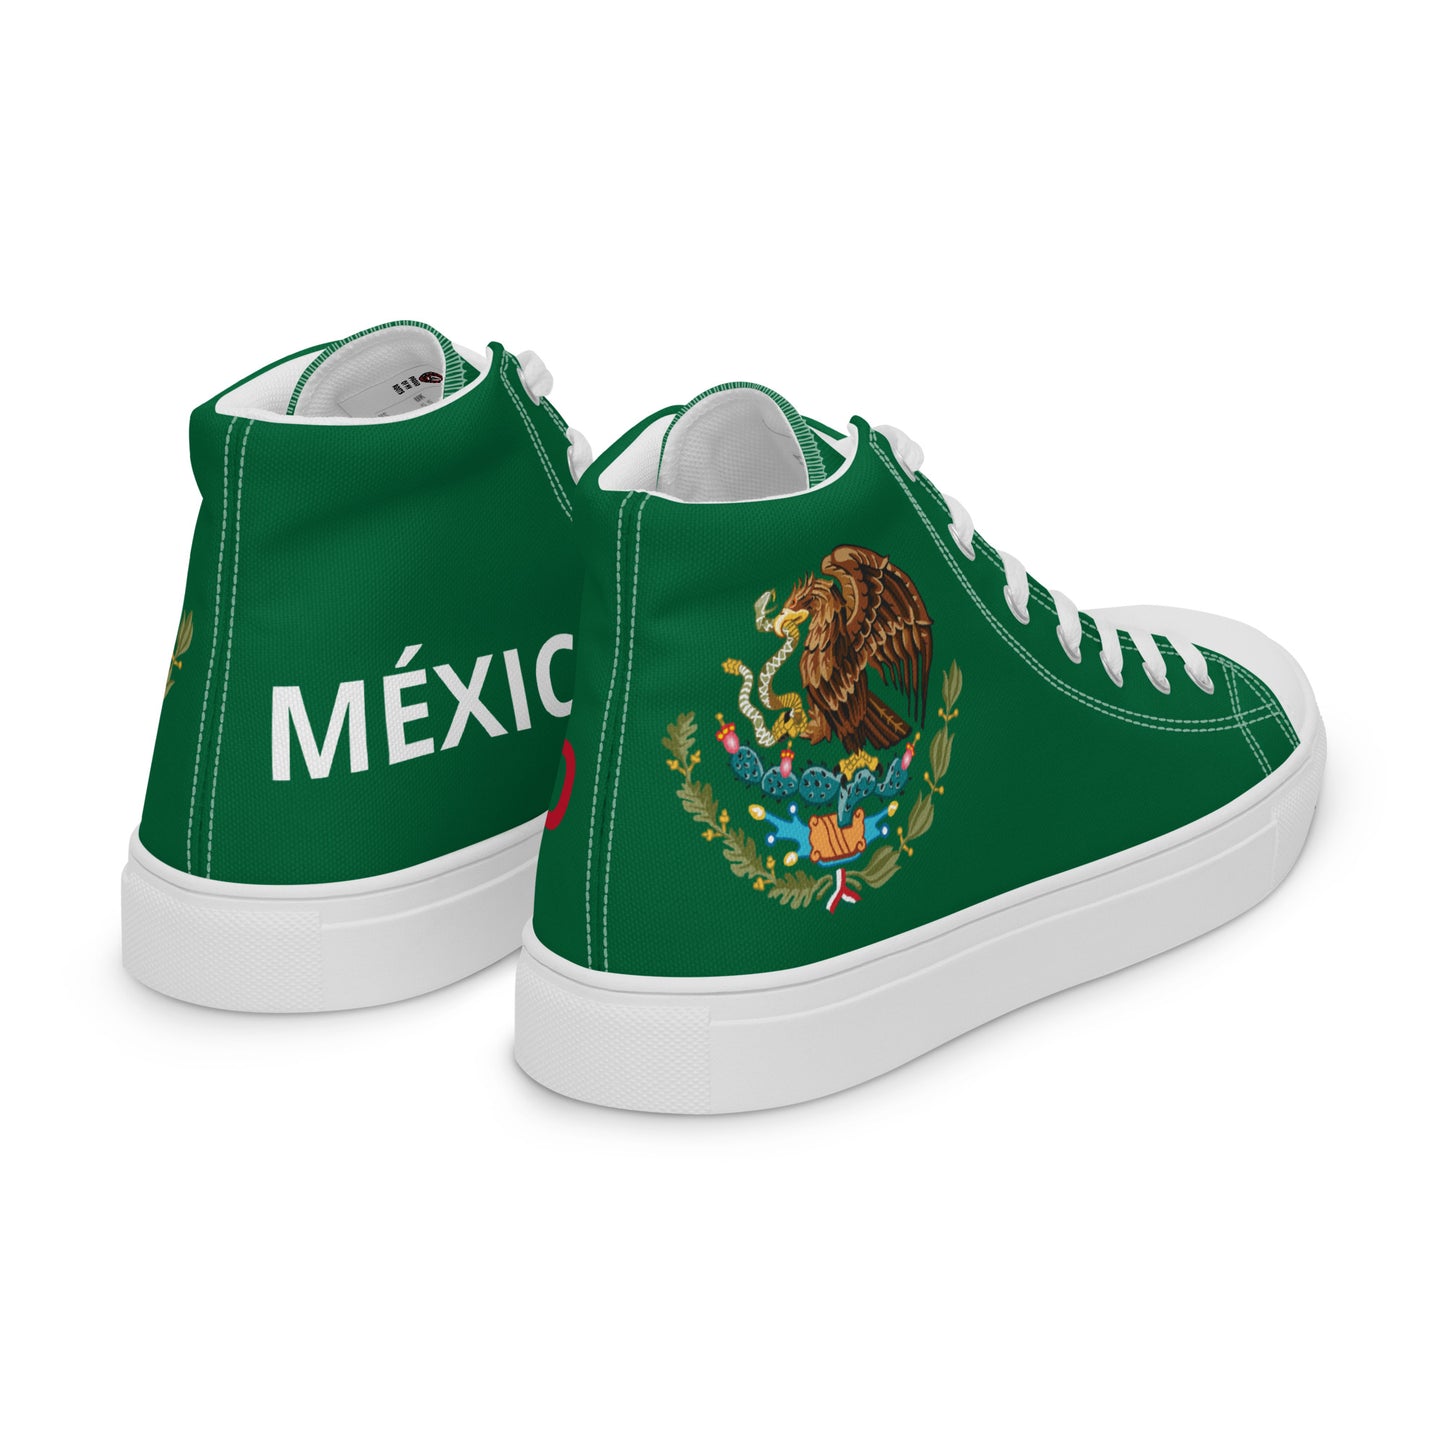 México - Men - Green - High top shoes